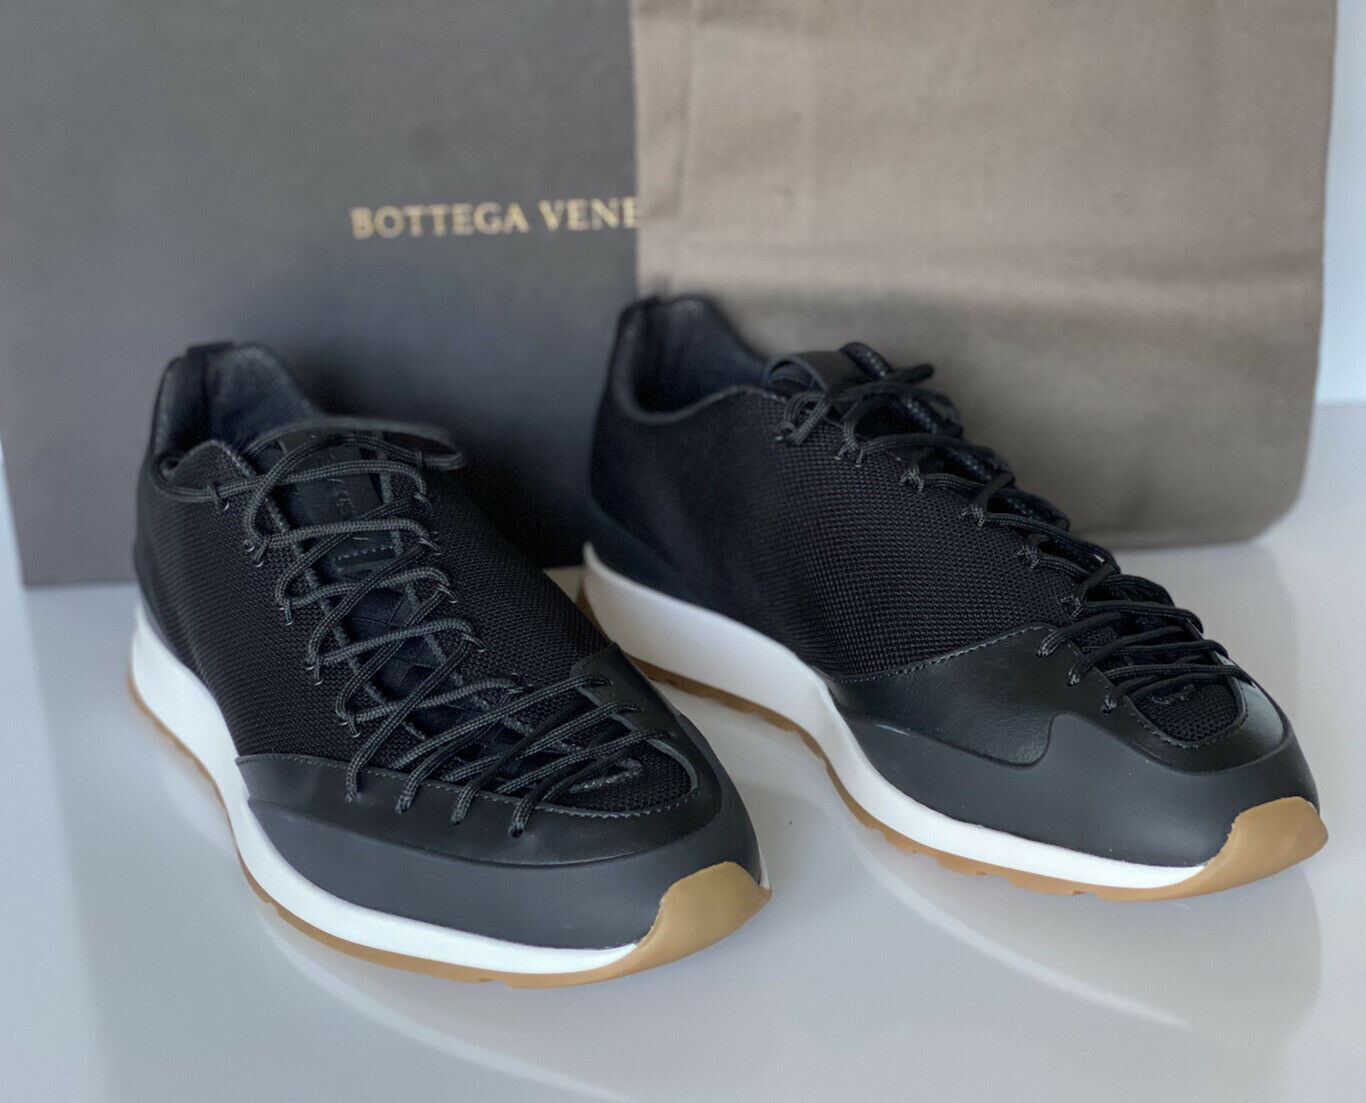 Мужские черные кроссовки Scar Tex Bottega Veneta 790 долларов США 6 США (39 евро) 609891 